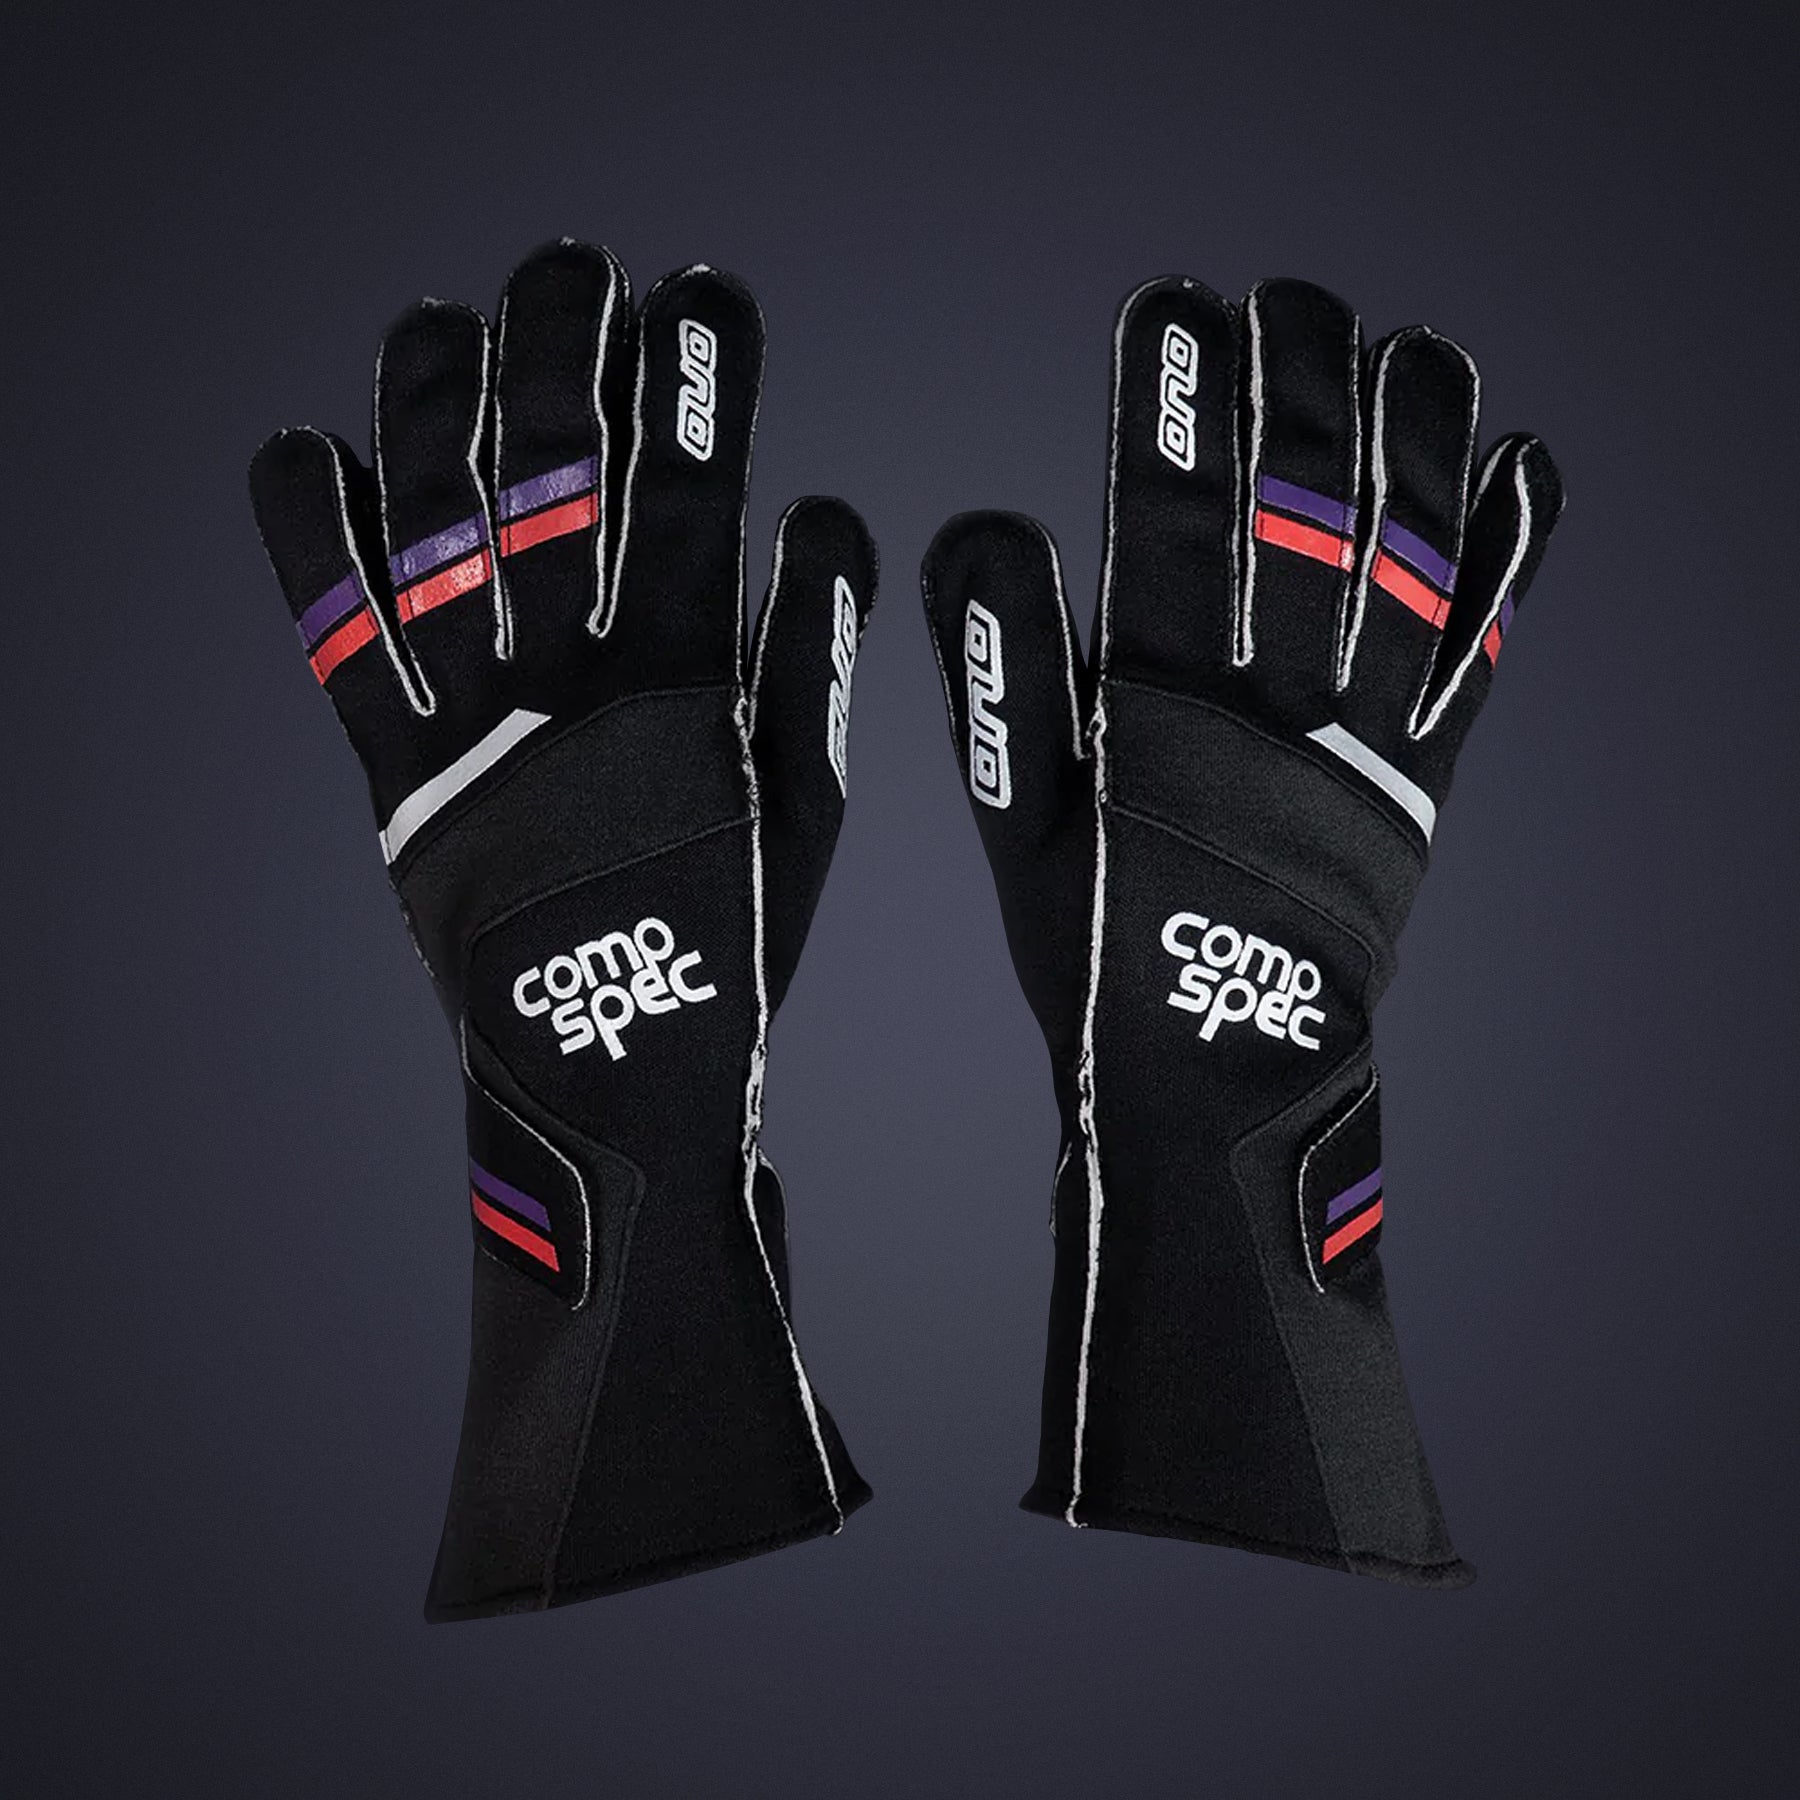 Racing Gloves (Comp Spec)